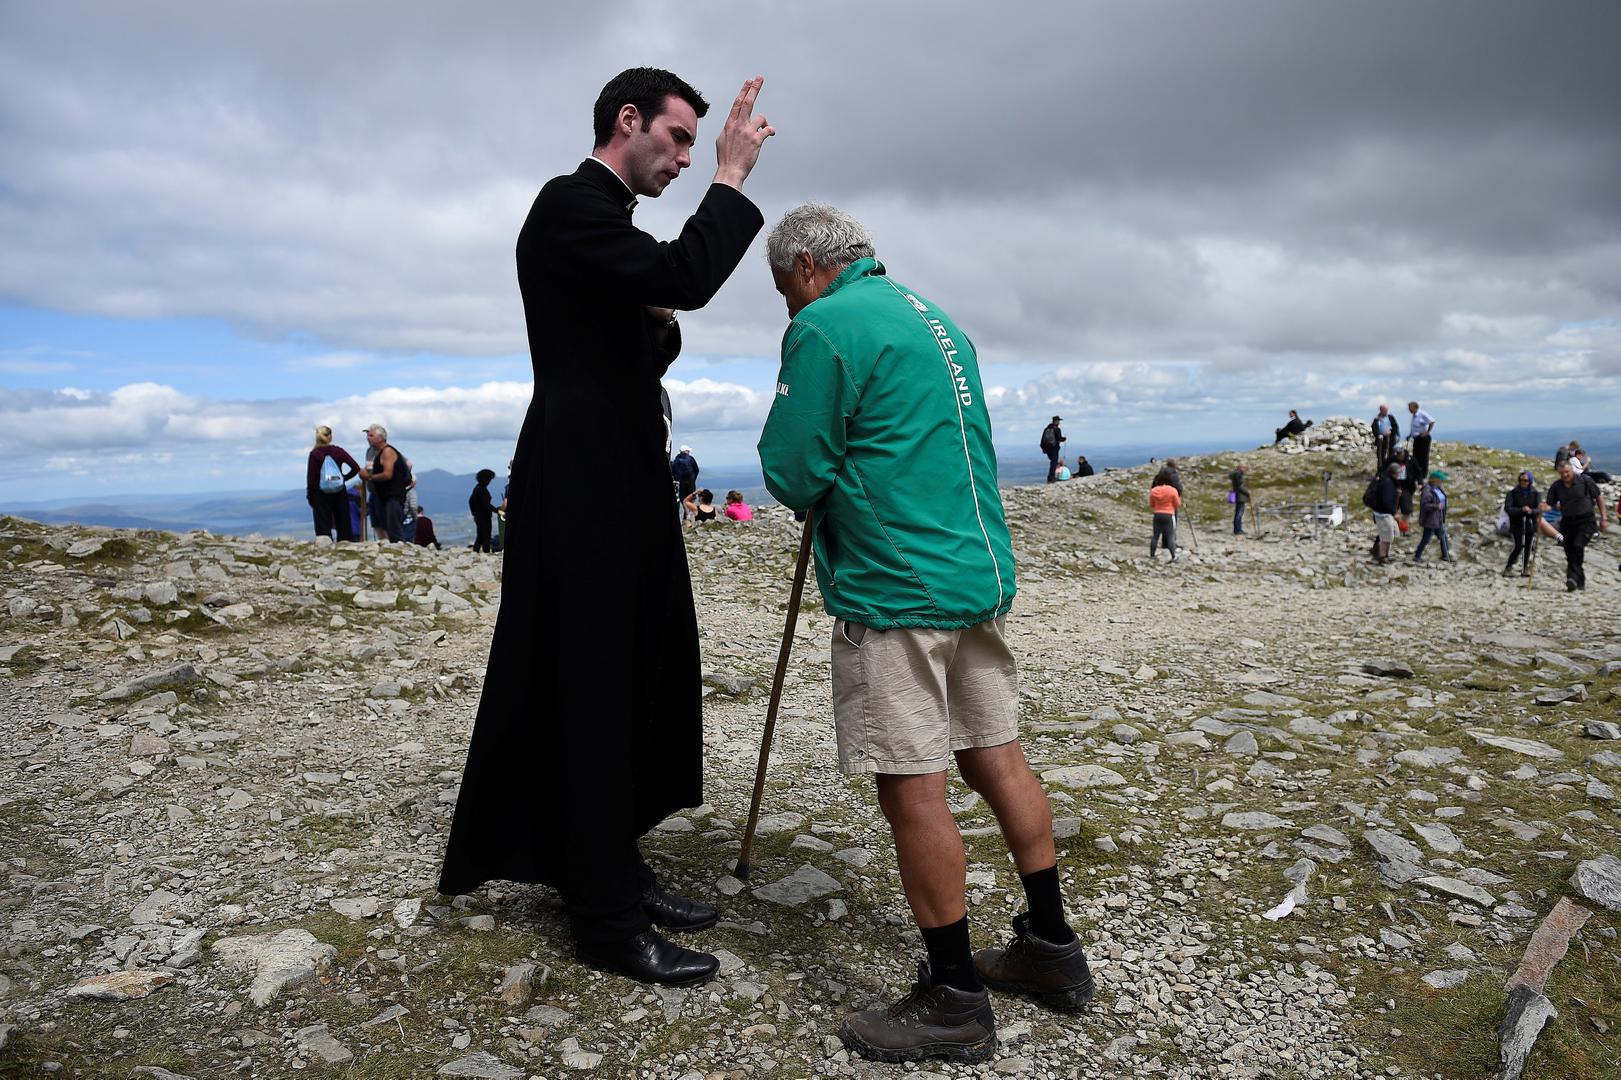 Blagoslov ovog mladog fratra dokazuje da u Irskoj ima još onih kojima je katolička vjera važna, no trend među mladima ide u suprotnom smjeru